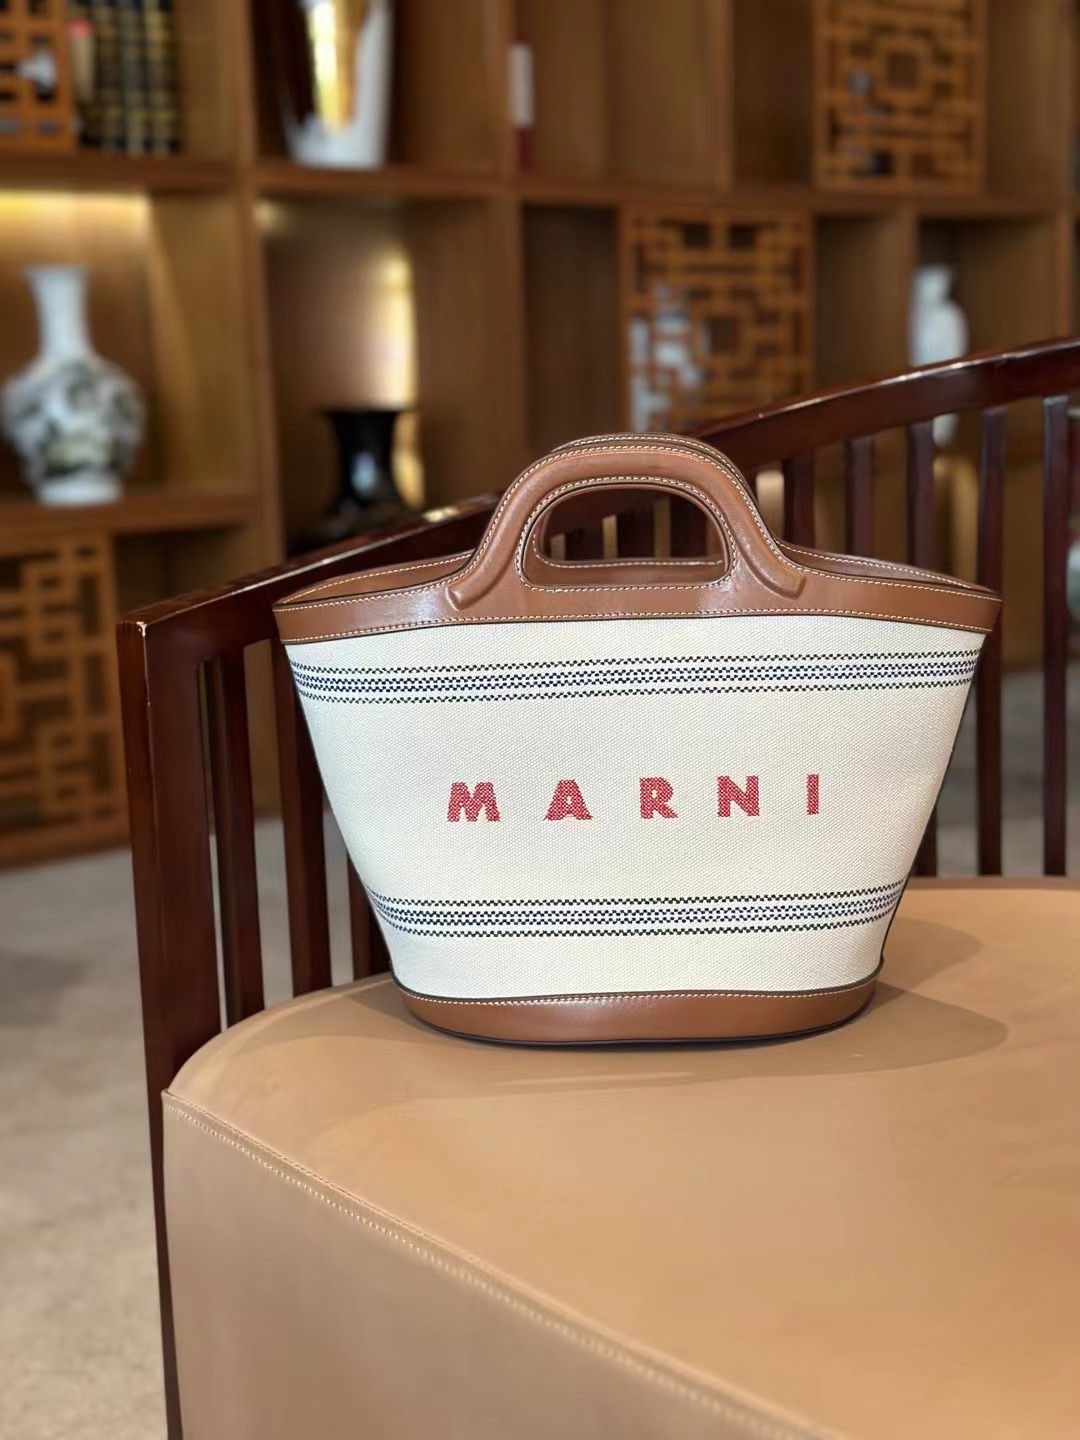 Marni マルニ キャンバスバケットバッグ Lサイズ ベージュブラウン